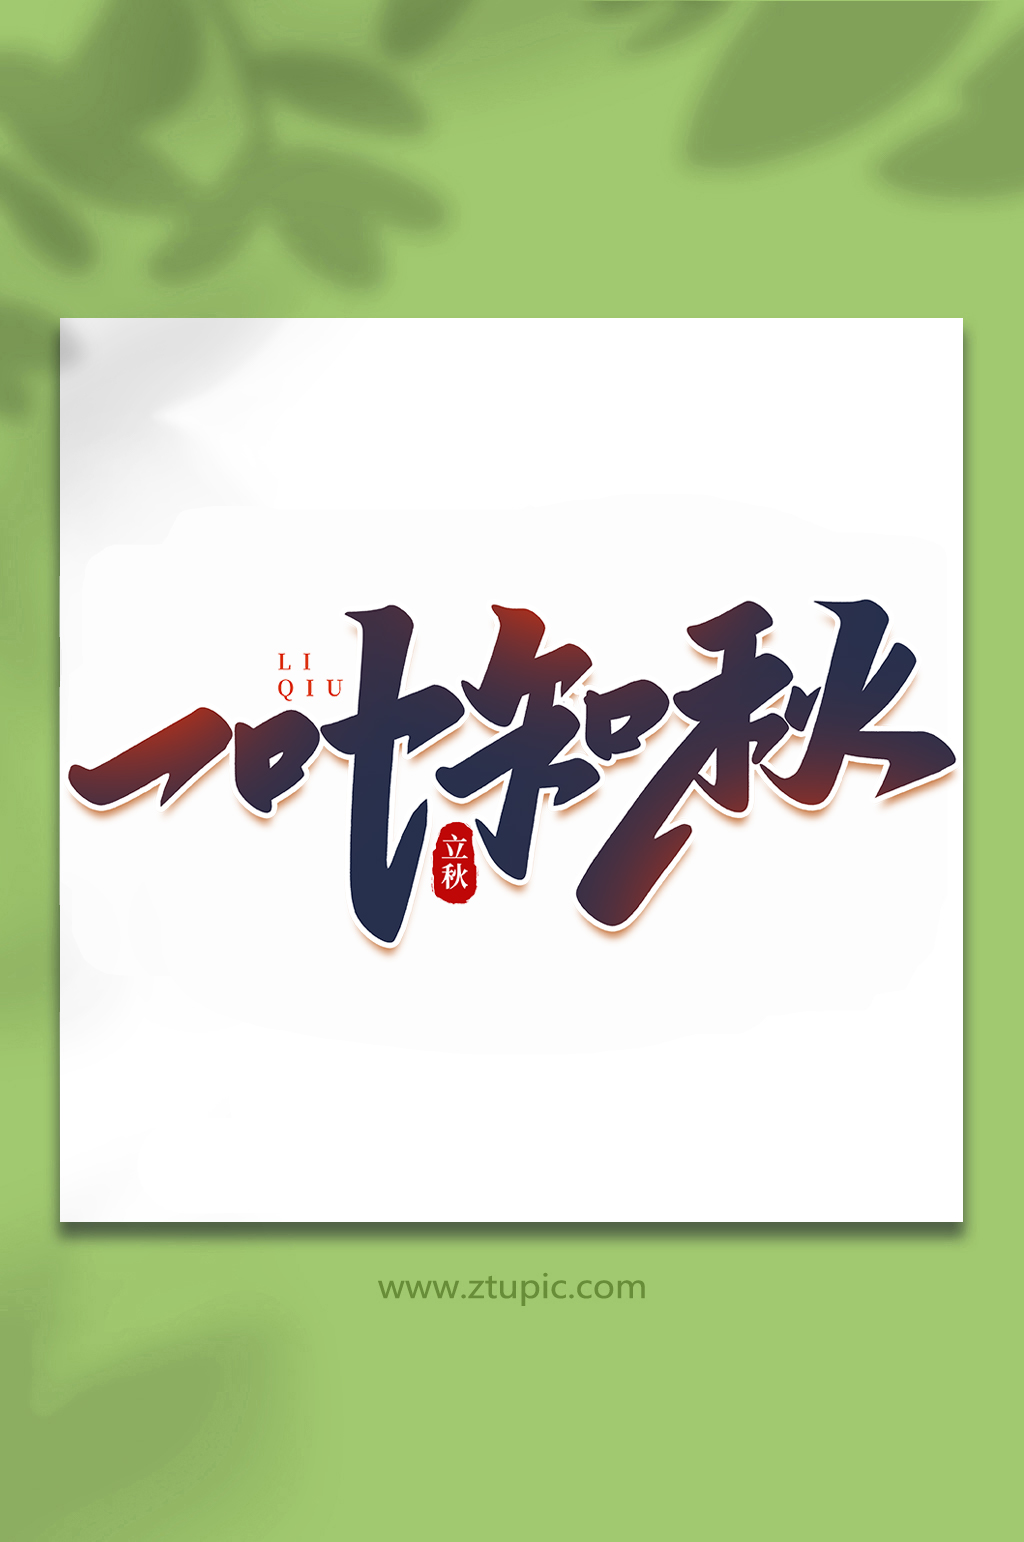 一叶知秋中国传统节日手写创意立秋艺术字素材